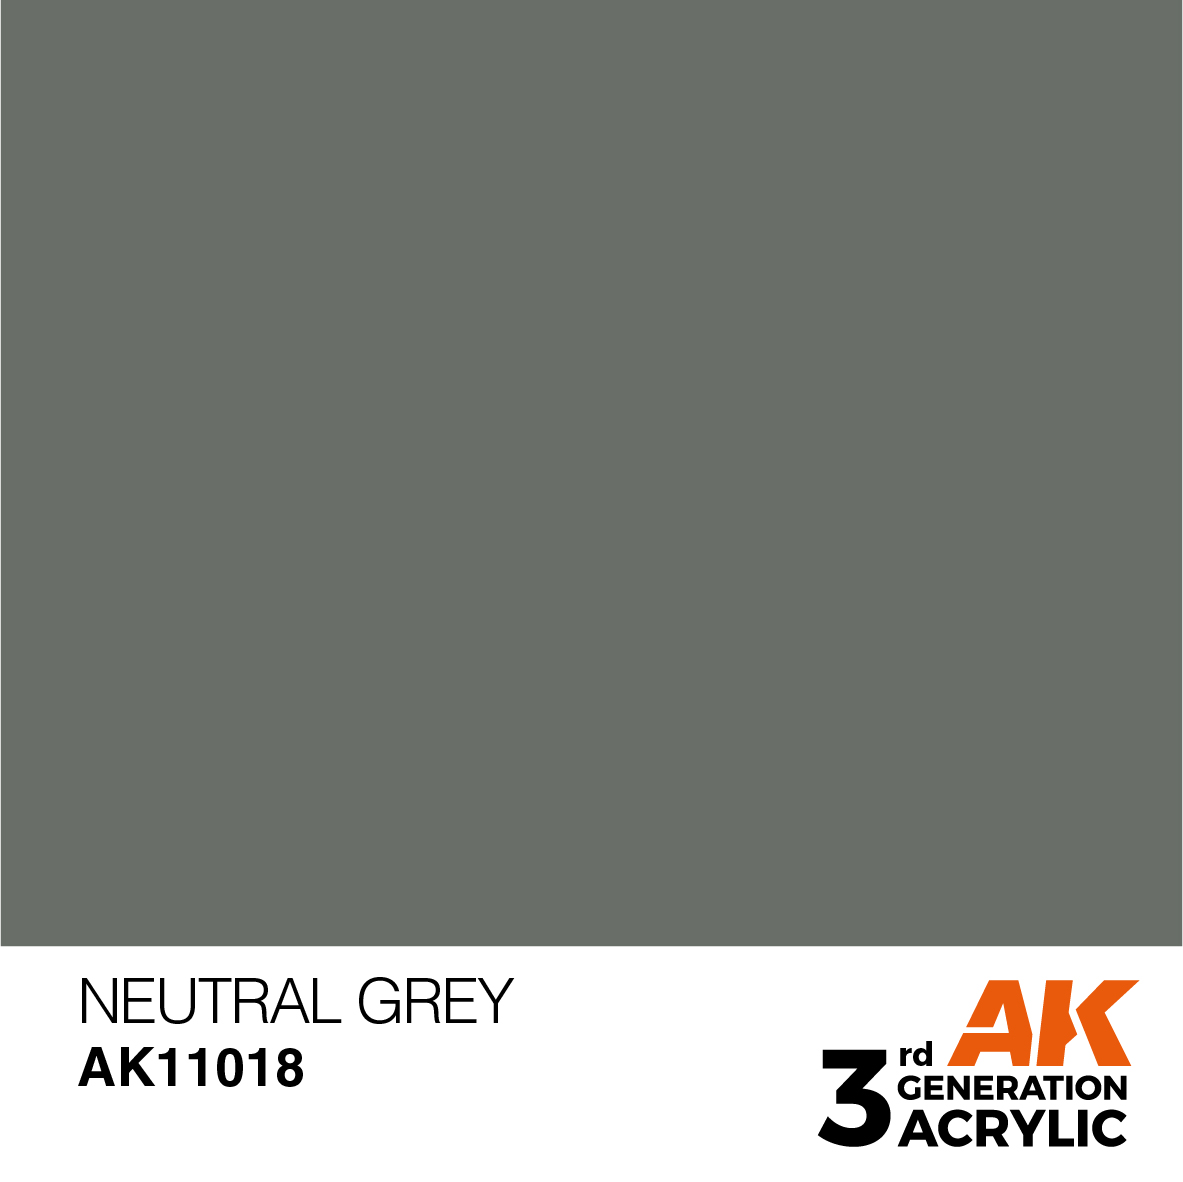 AK11018 Neutral Grey (3rd-Generation) (17mL)